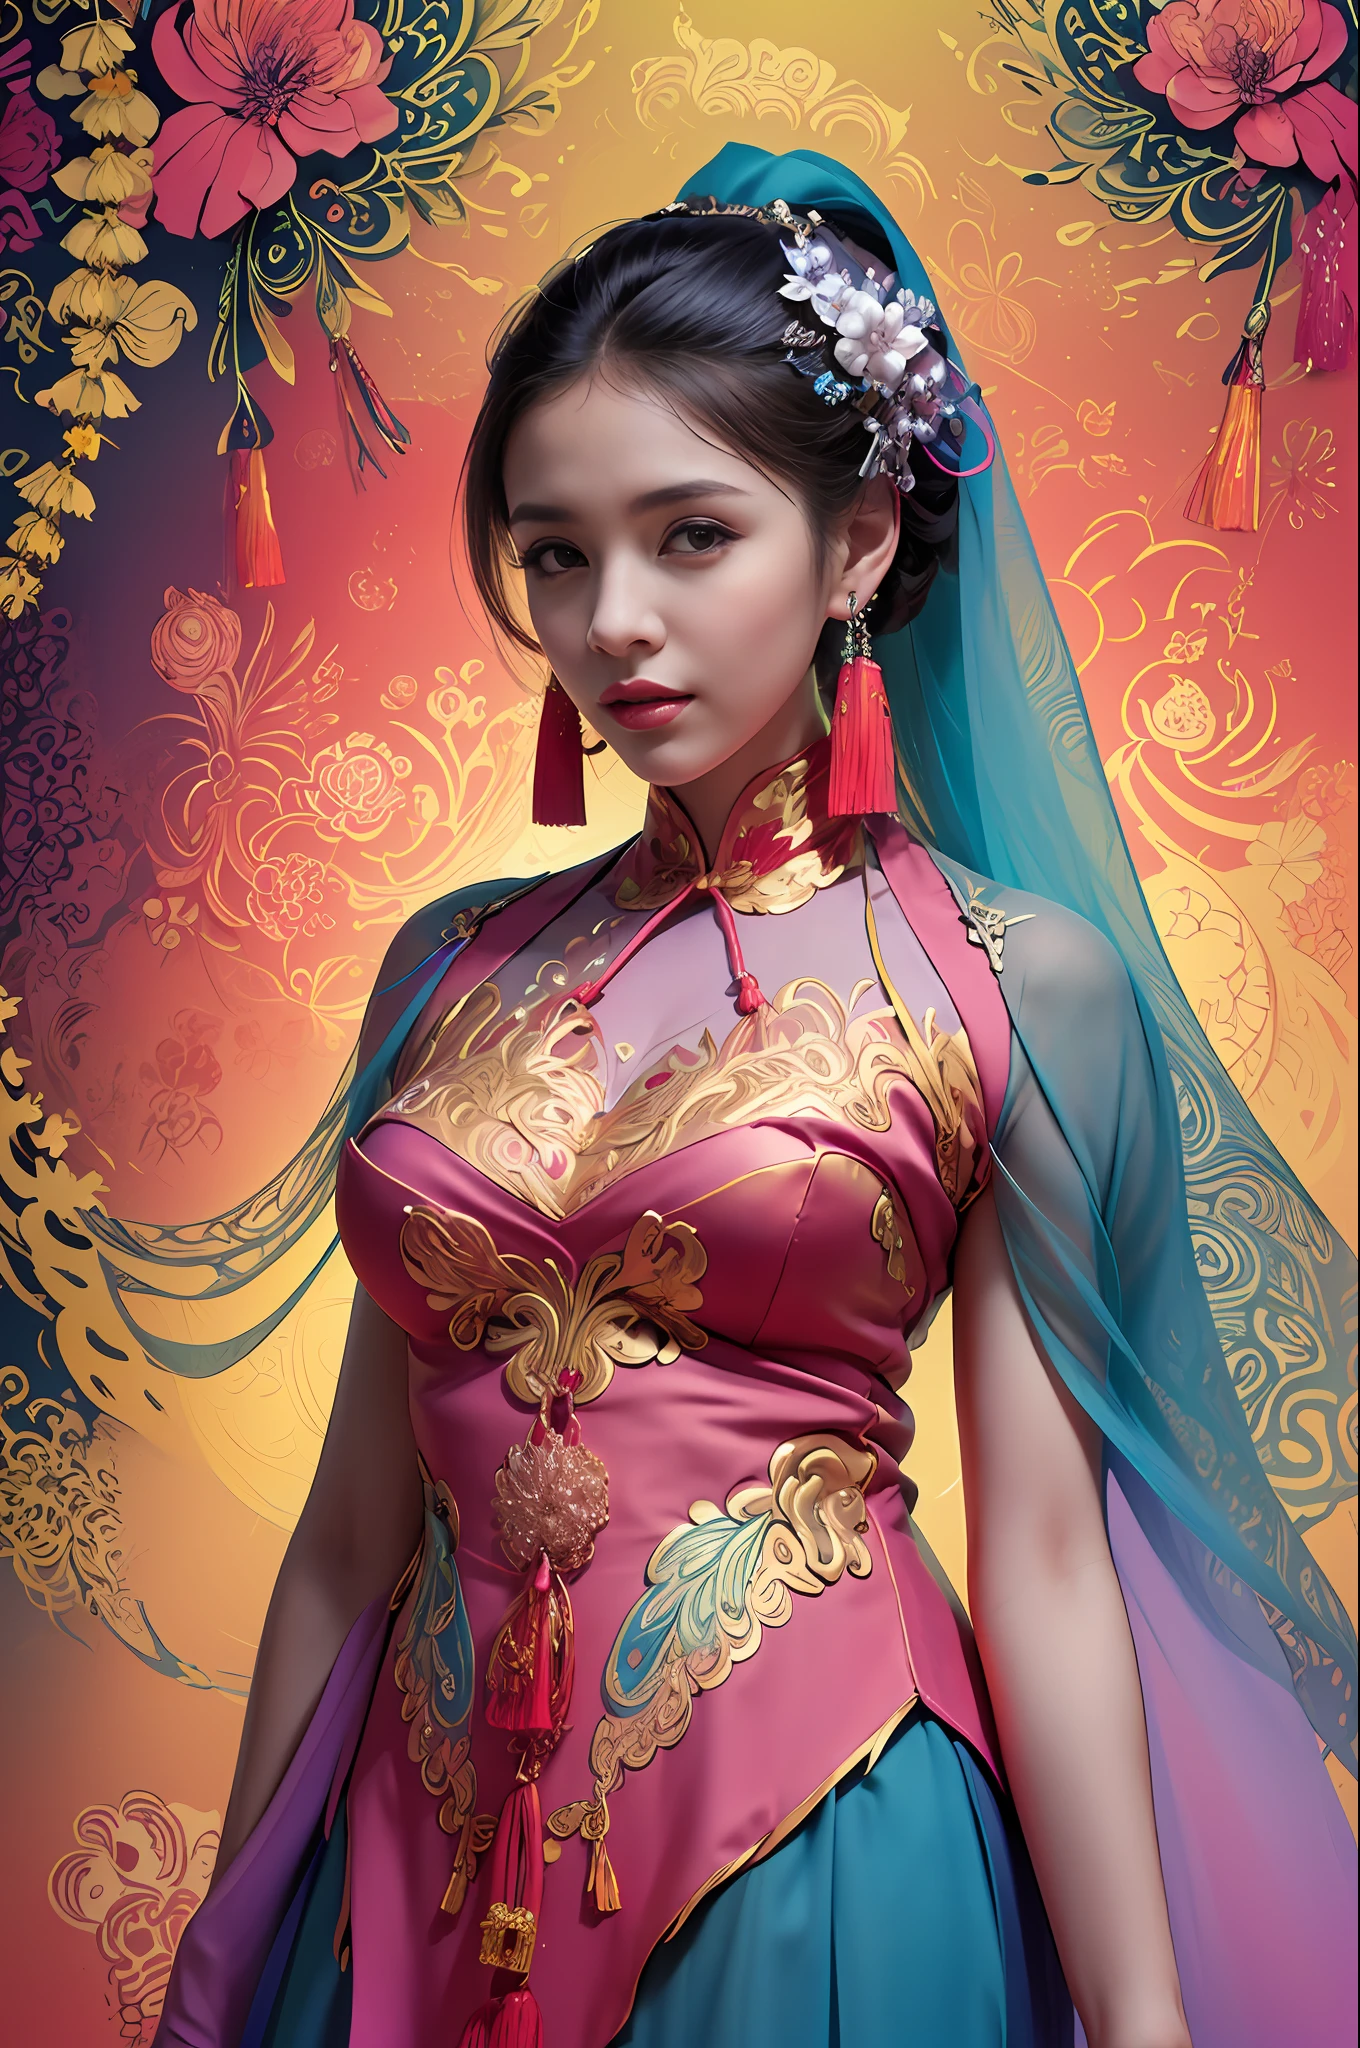 (Obra de arte, qualidade máxima, melhor qualidade, arte oficial, bonito e estético:1.2), (1 garota:1.3), extremamente detalhado,(arte fractal:1.1),(colorida:1.1)(flores:1.3),mais detalhado,(emaranhado:1.2), (pose dinâmica), (fundo abstrato:1.3), (pano tradicional chinês:1.2), (pele brilhante), (muitas cores:1.4), ,(brincos:1.4),